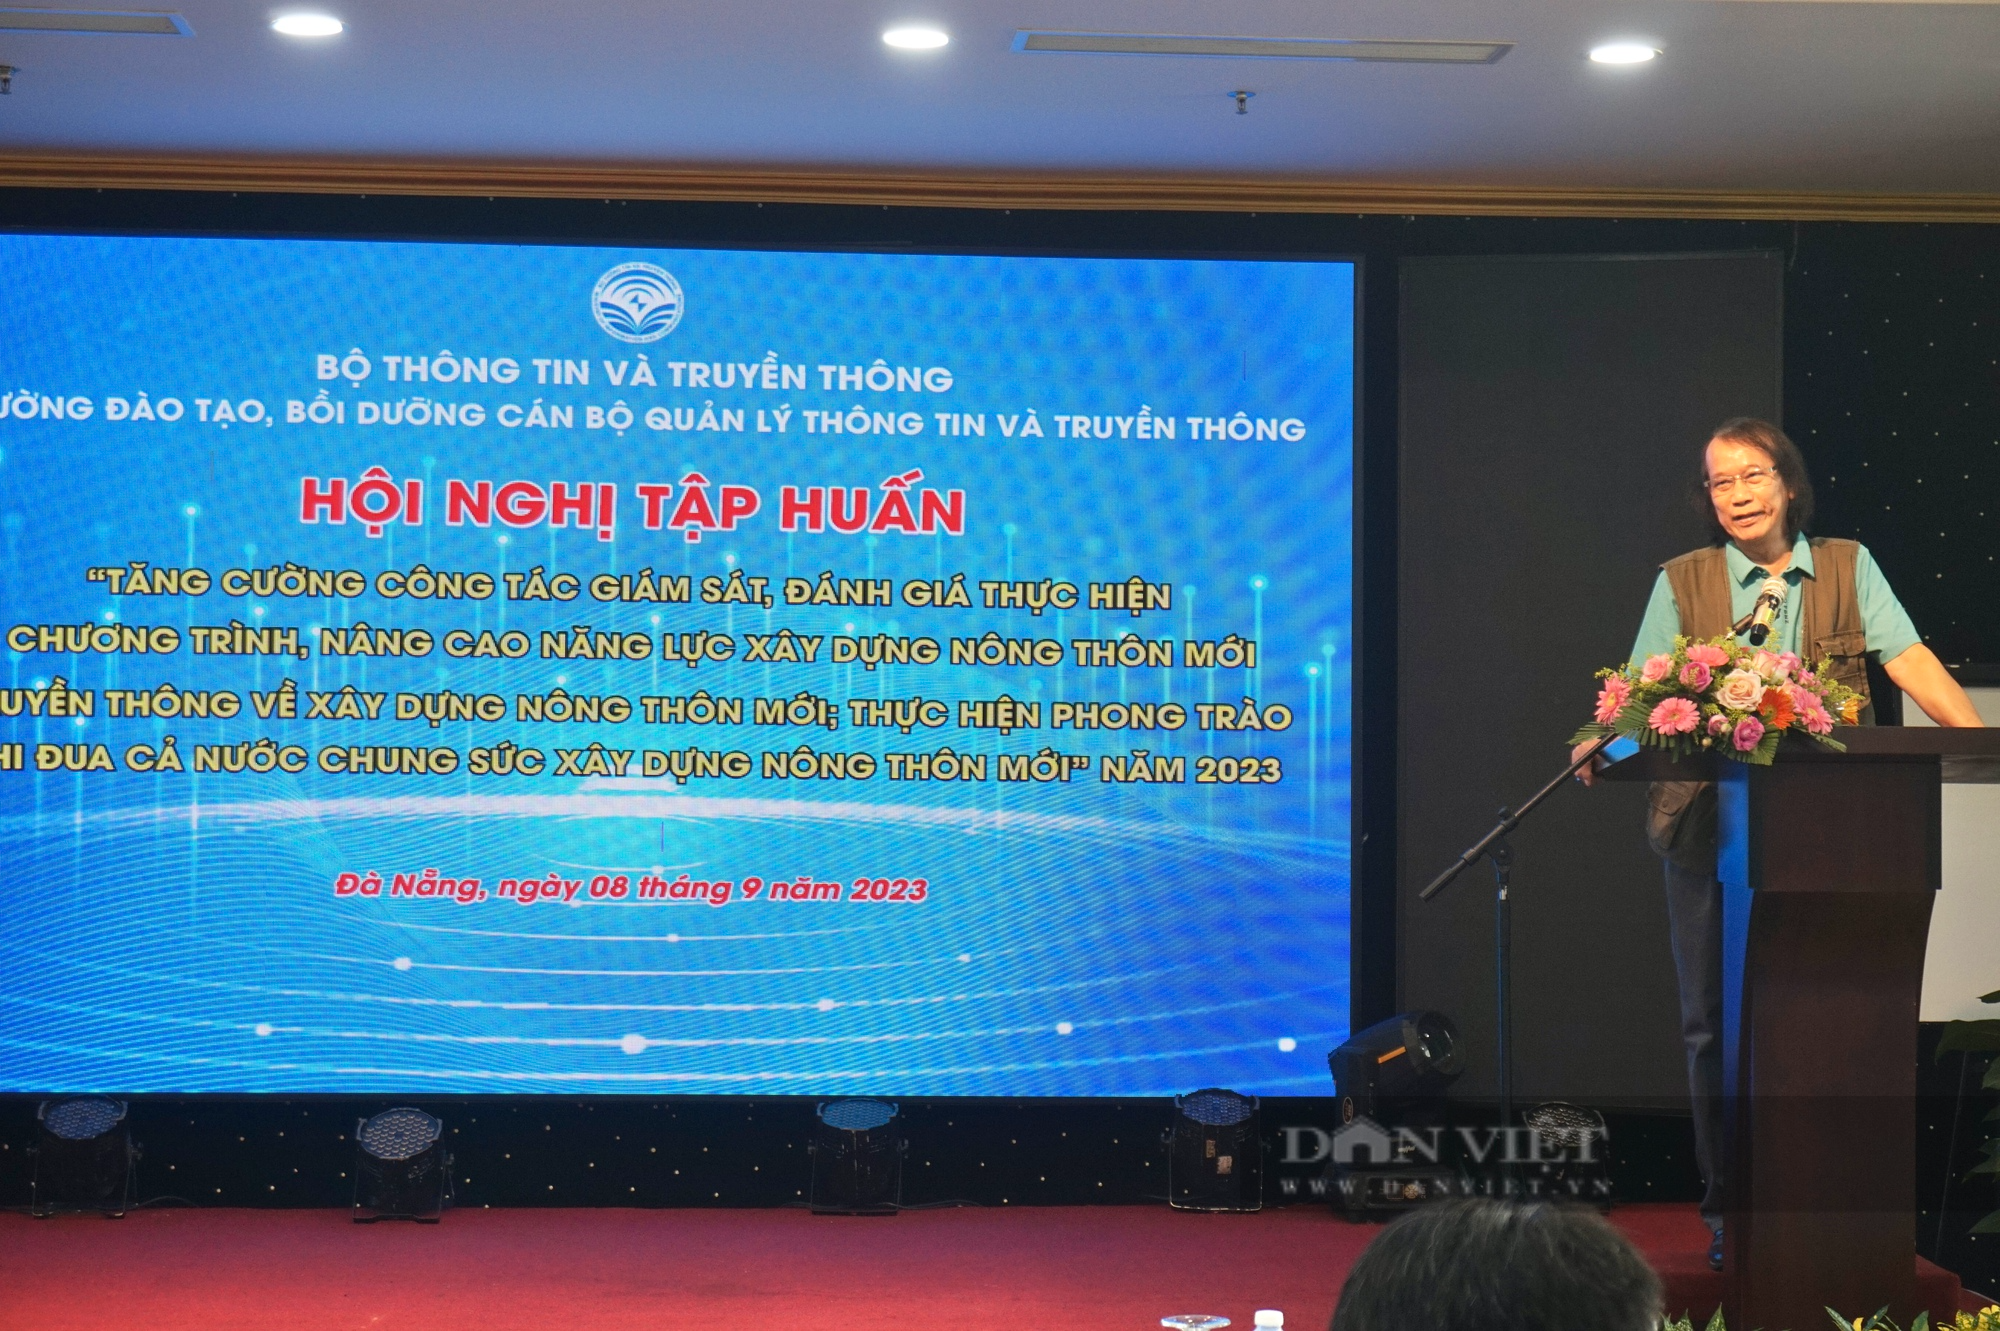 Đà Nẵng: Hơn 100 đại biểu tham dự tập huấn kỹ năng truyền thông về xây dựng nông thôn mới - Ảnh 5.